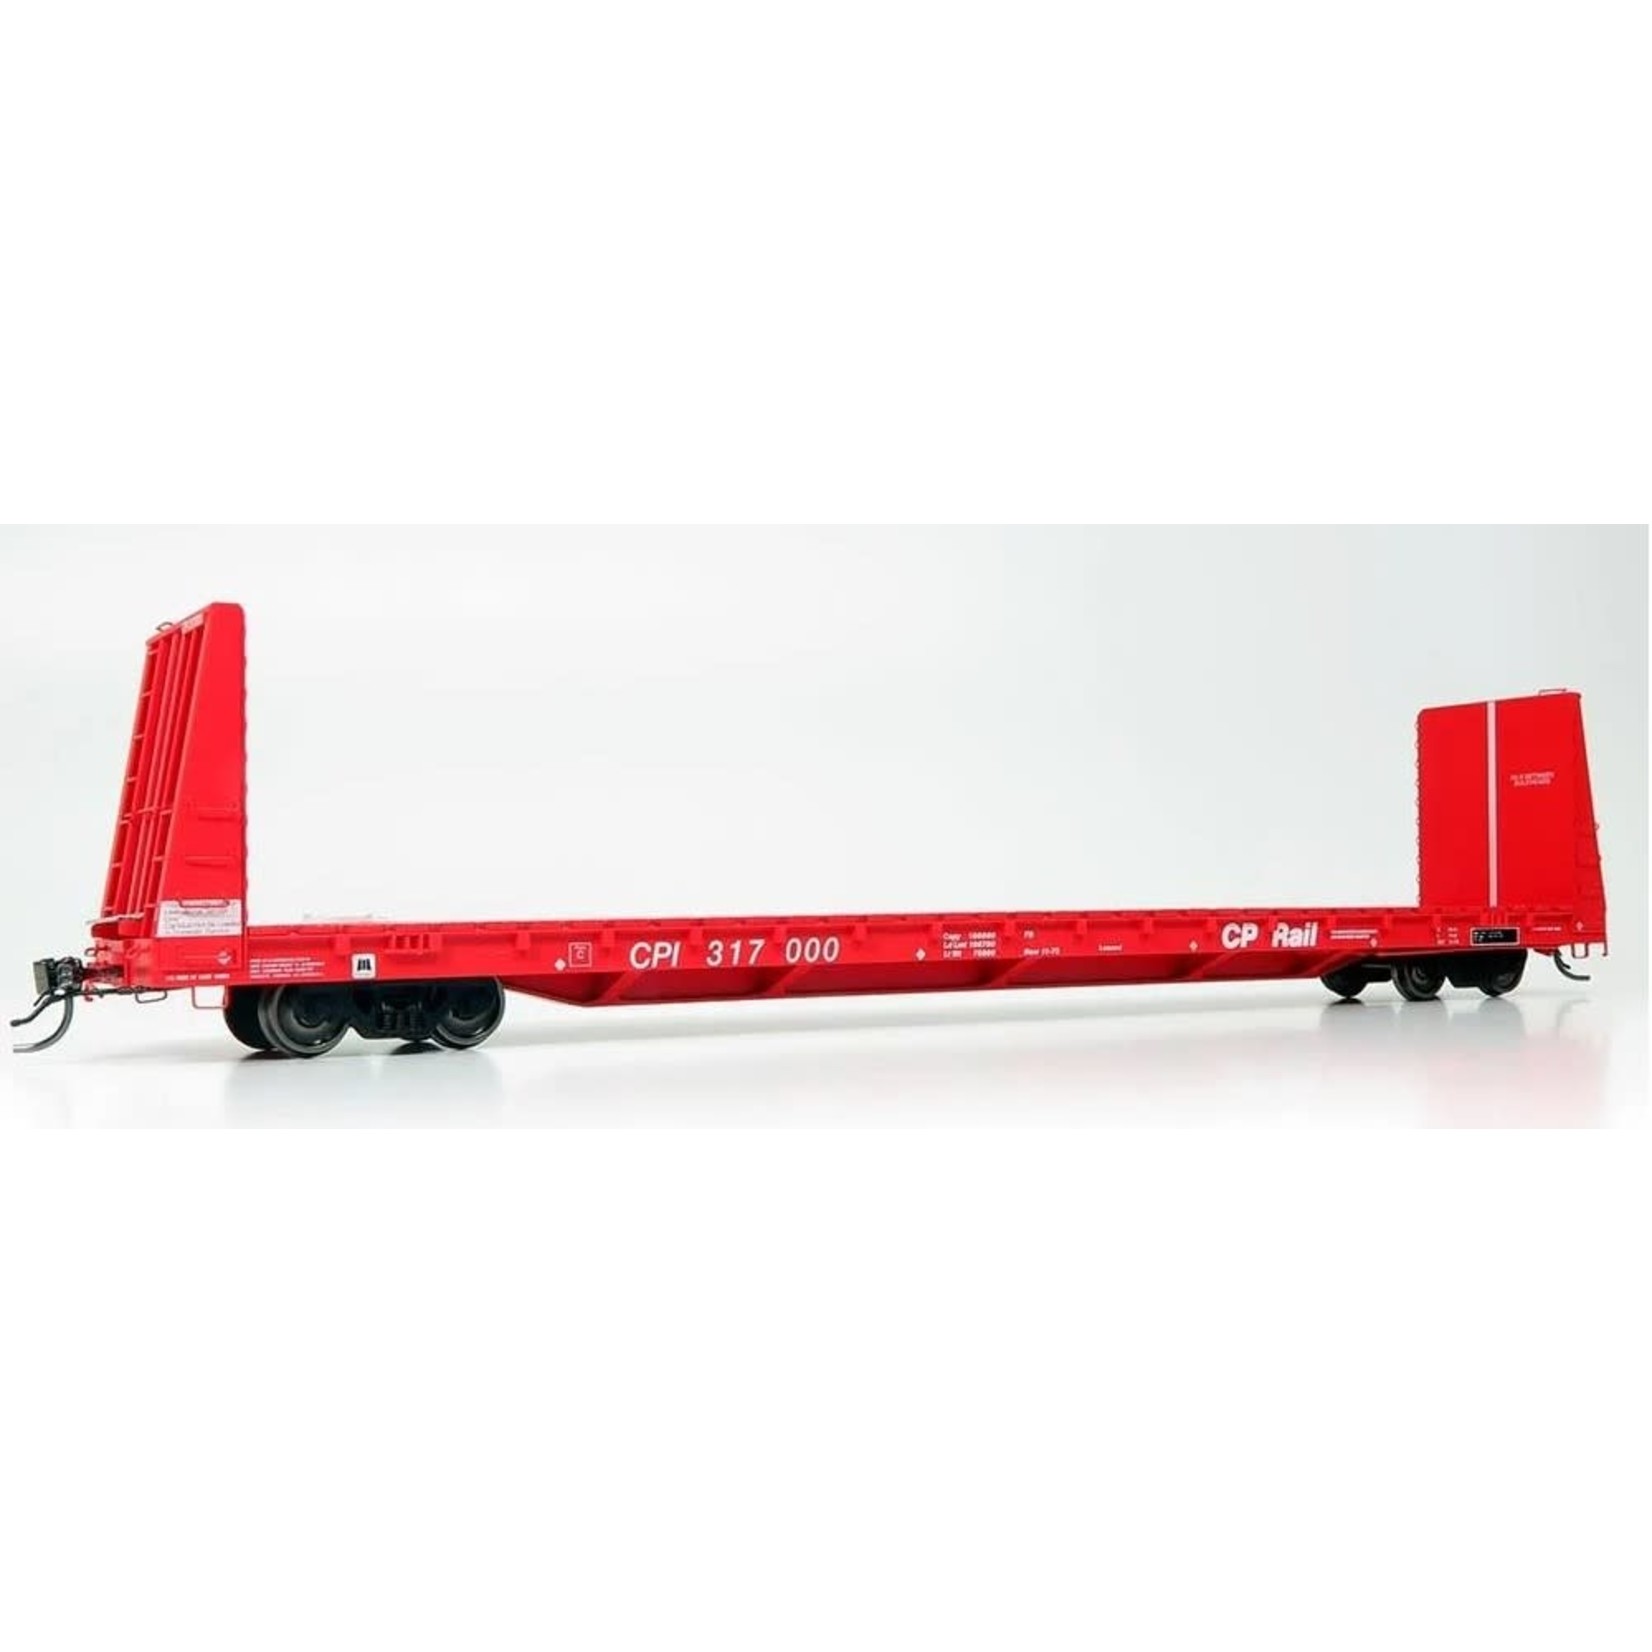 Rapido Trains HO Marine Industries Bulkhead Flatcar: CP Rail - Action Red: Single Car